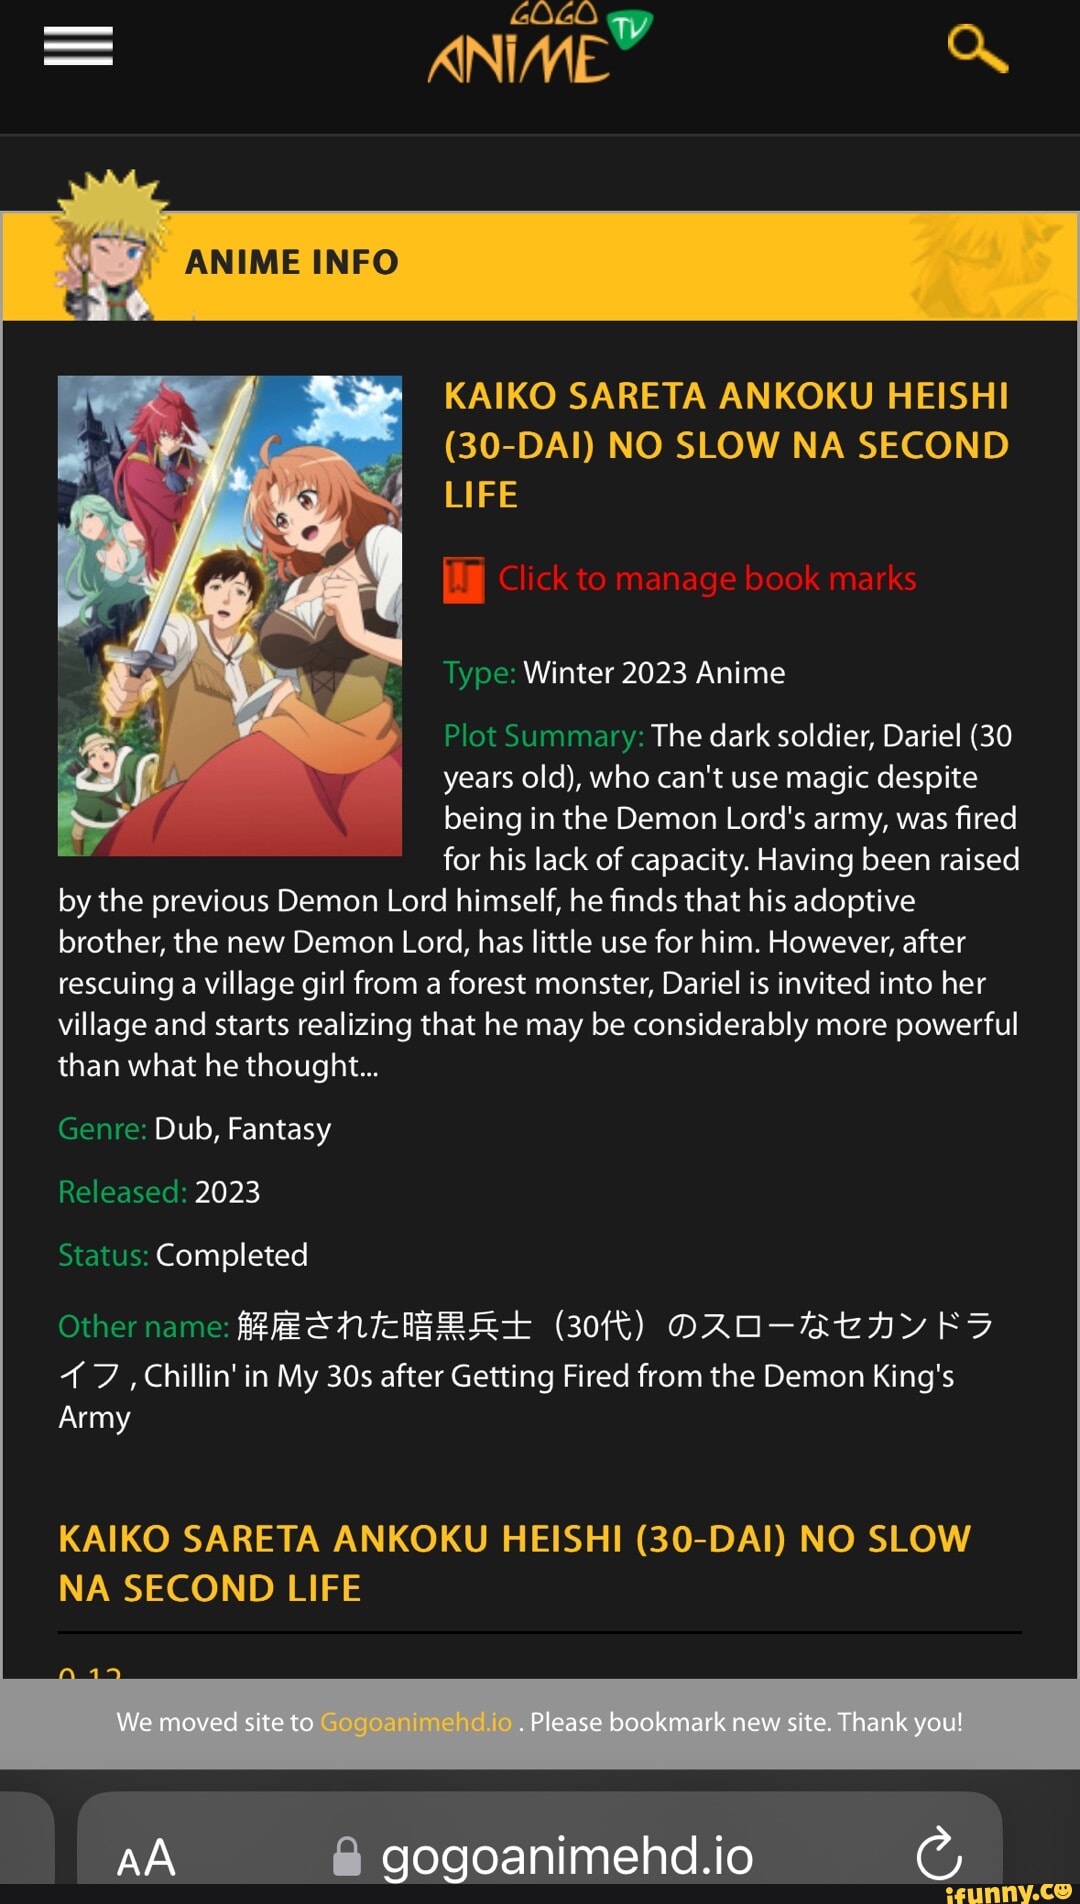 Demon king army fired Dariel  Kaiko sareta Ankoku Heishi (30-dai) no Slow  na Second Life 